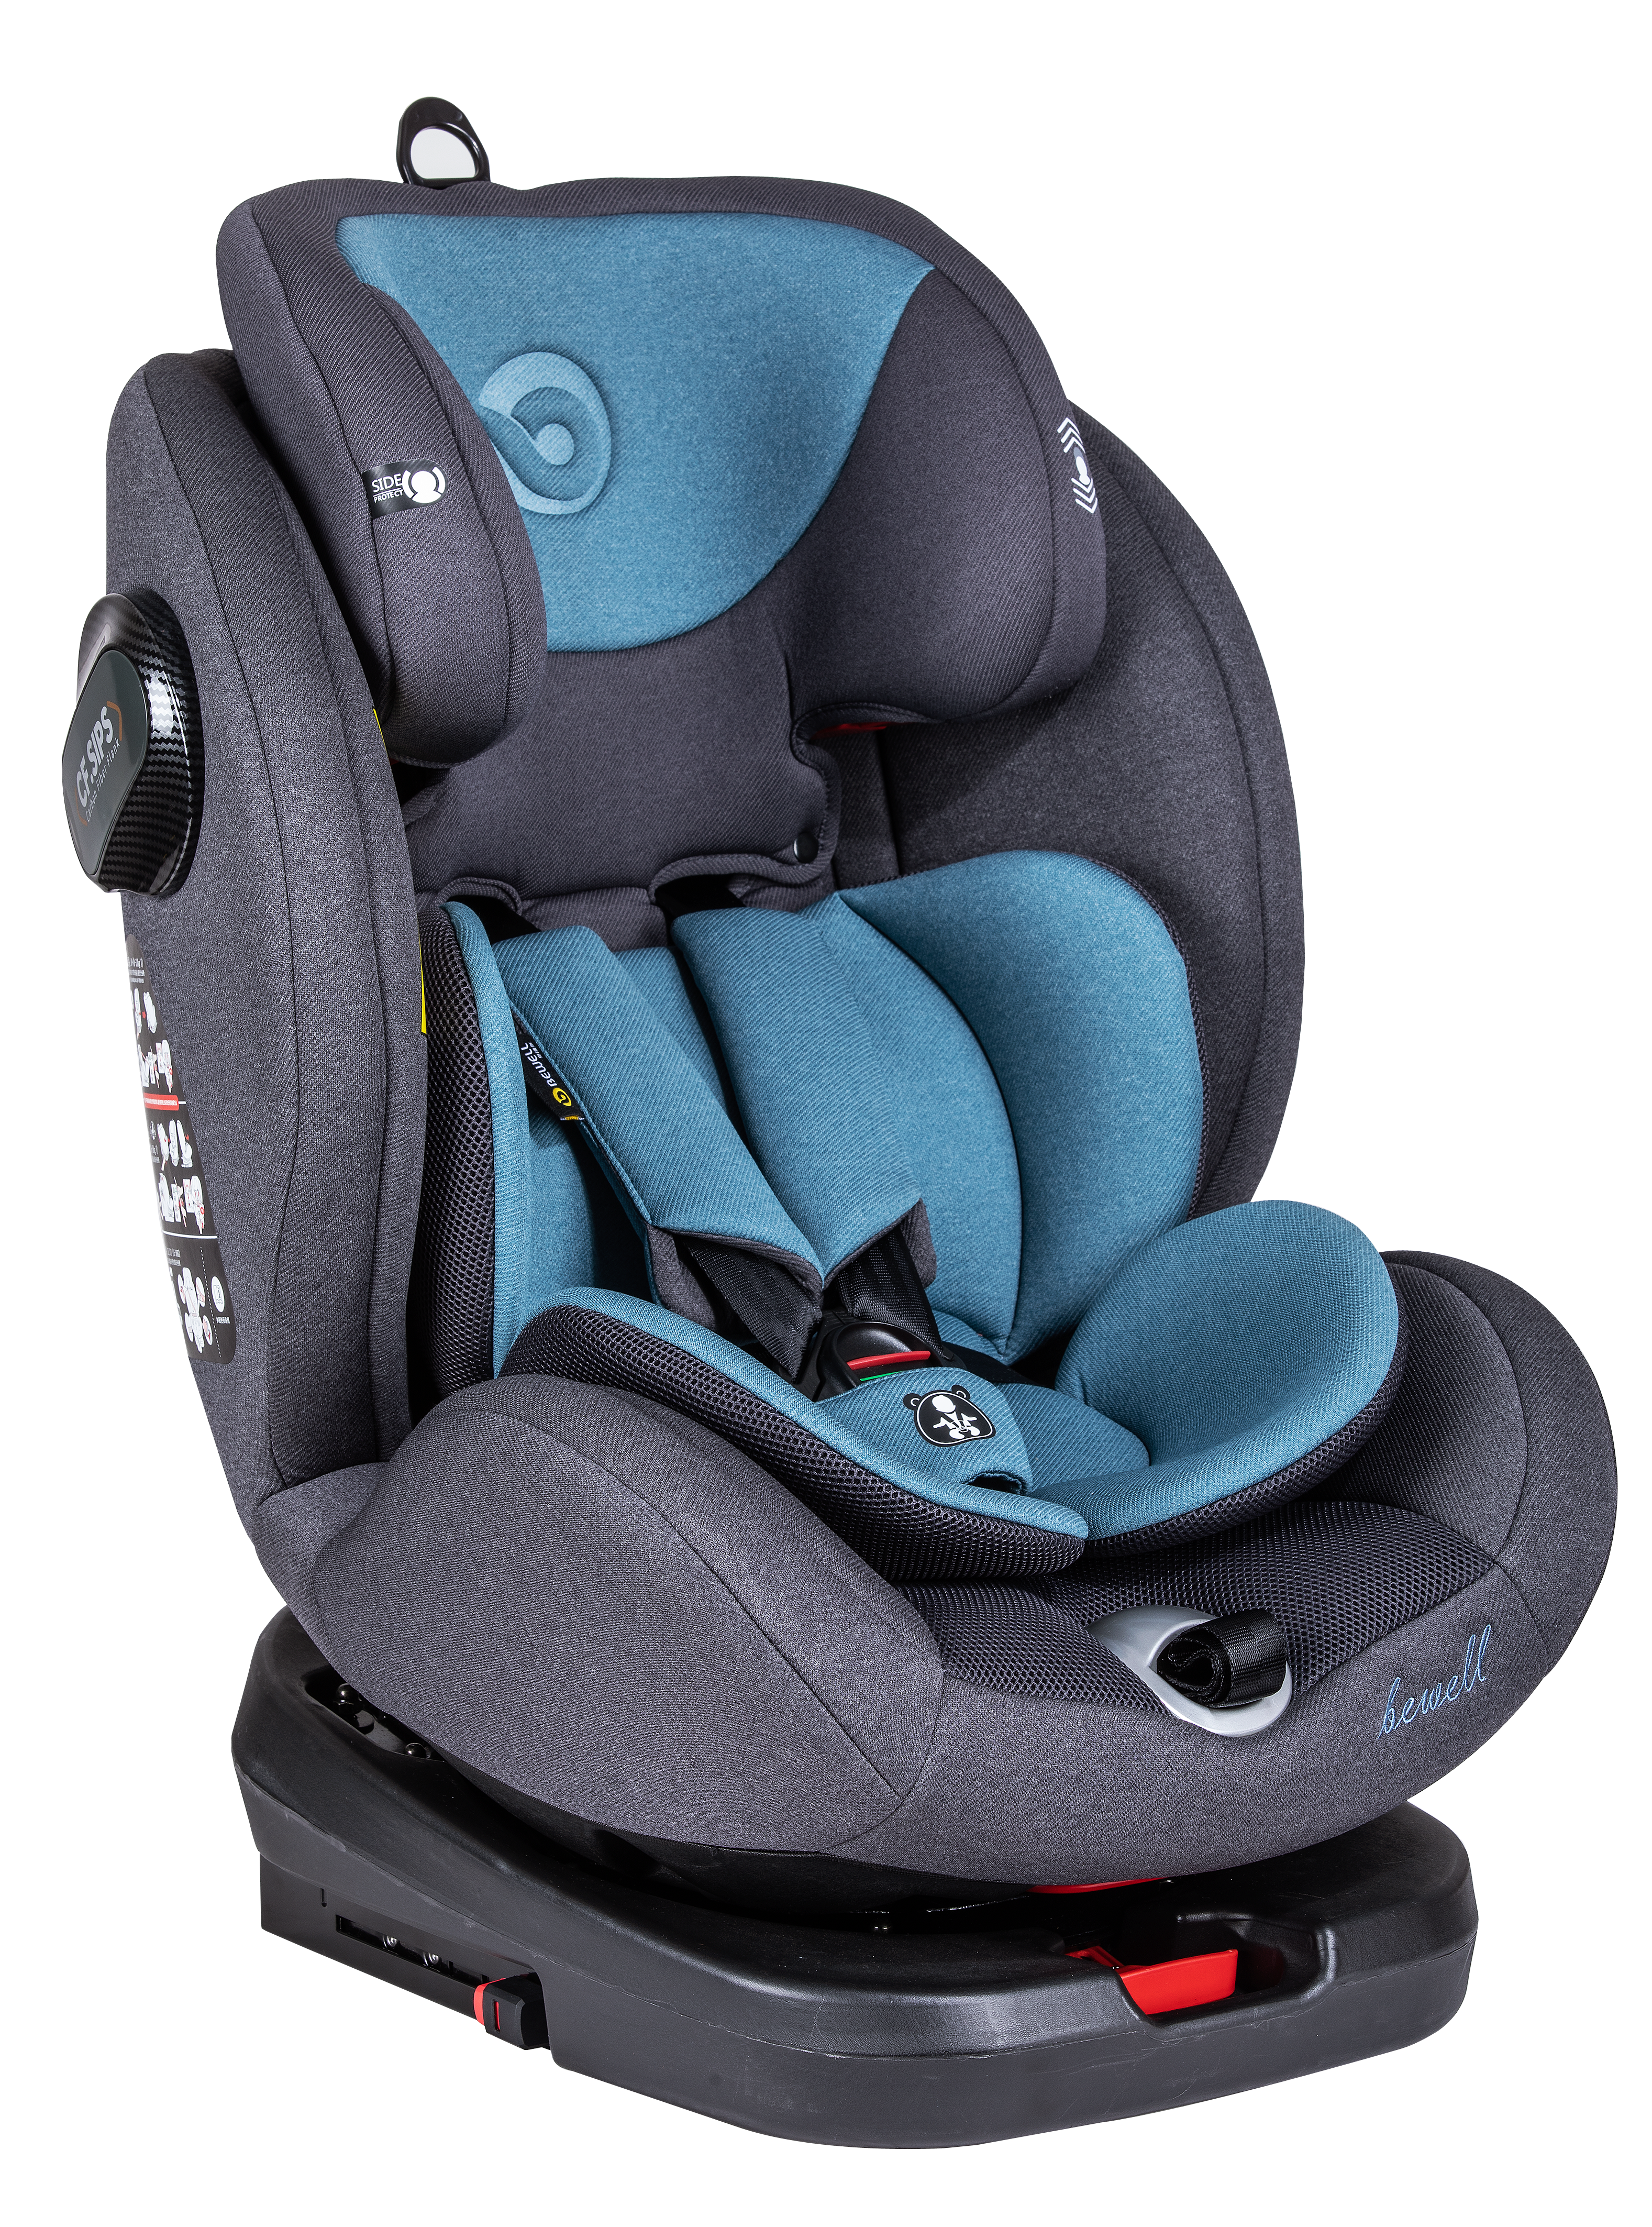 Forward Facing Big 2 Year Old Baby Car Seat